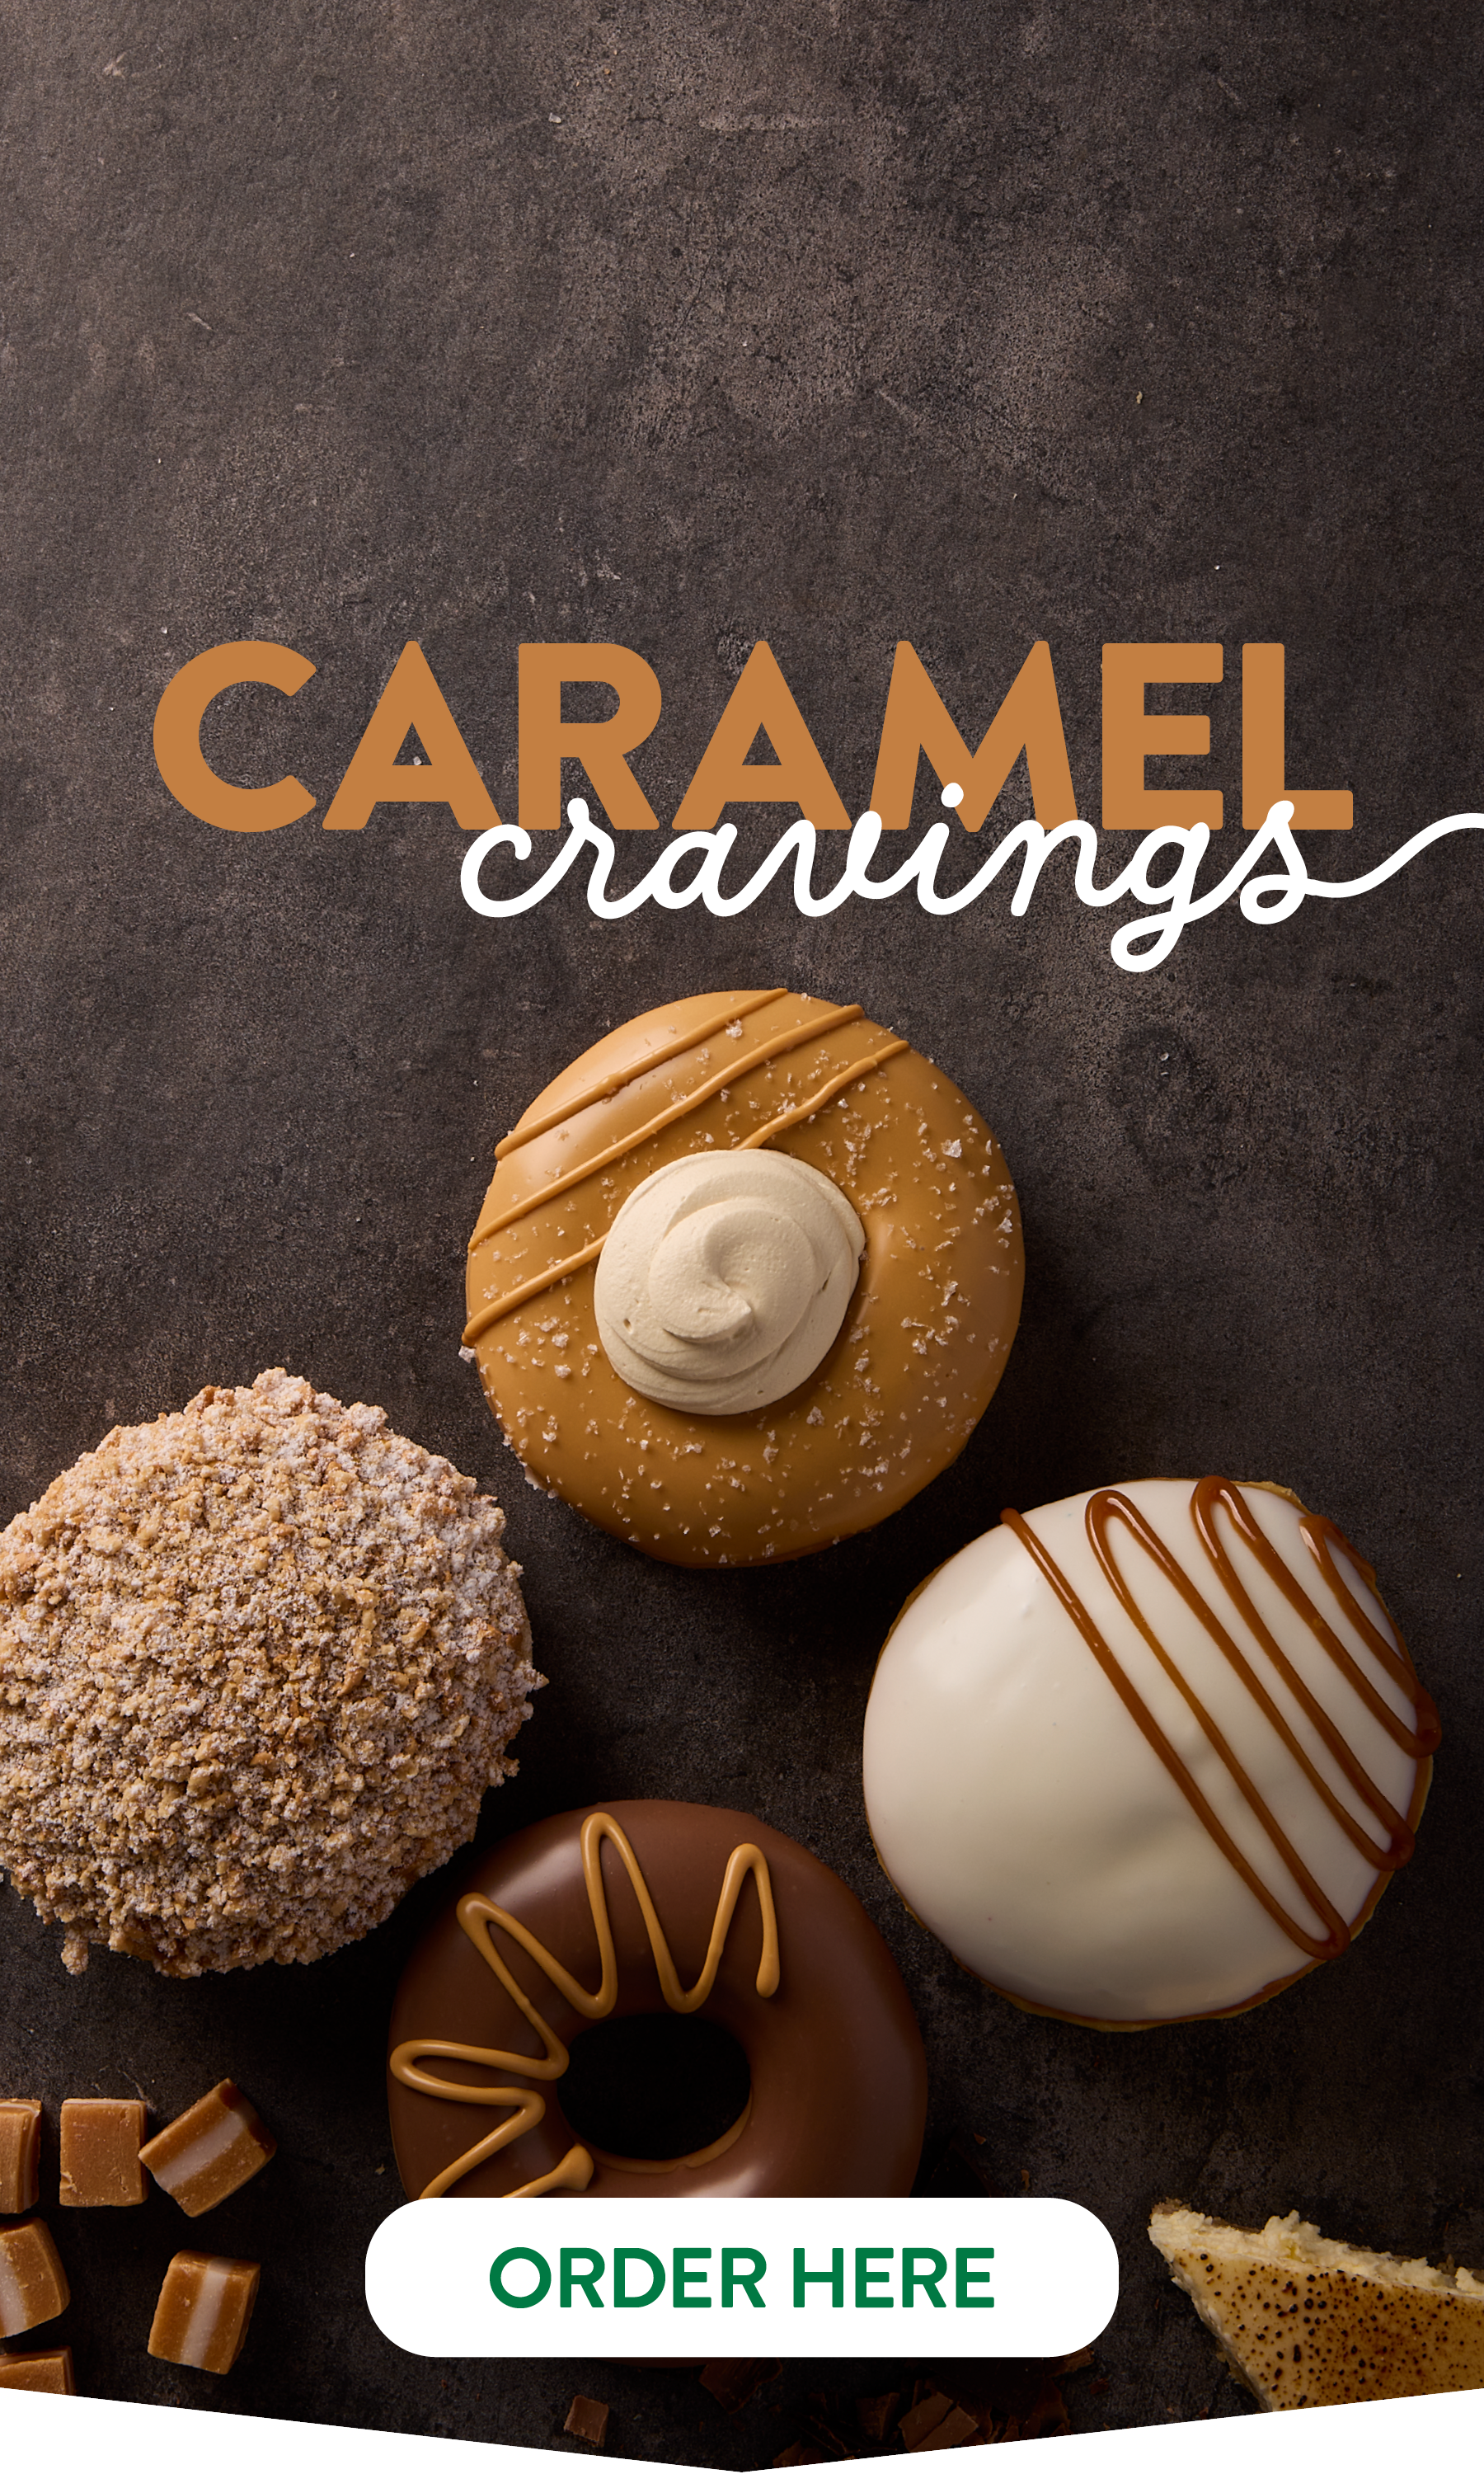 Krispy Kreme Caramel Cravings LTO - KK Website Mobile Banner 1800x3000px FINAL